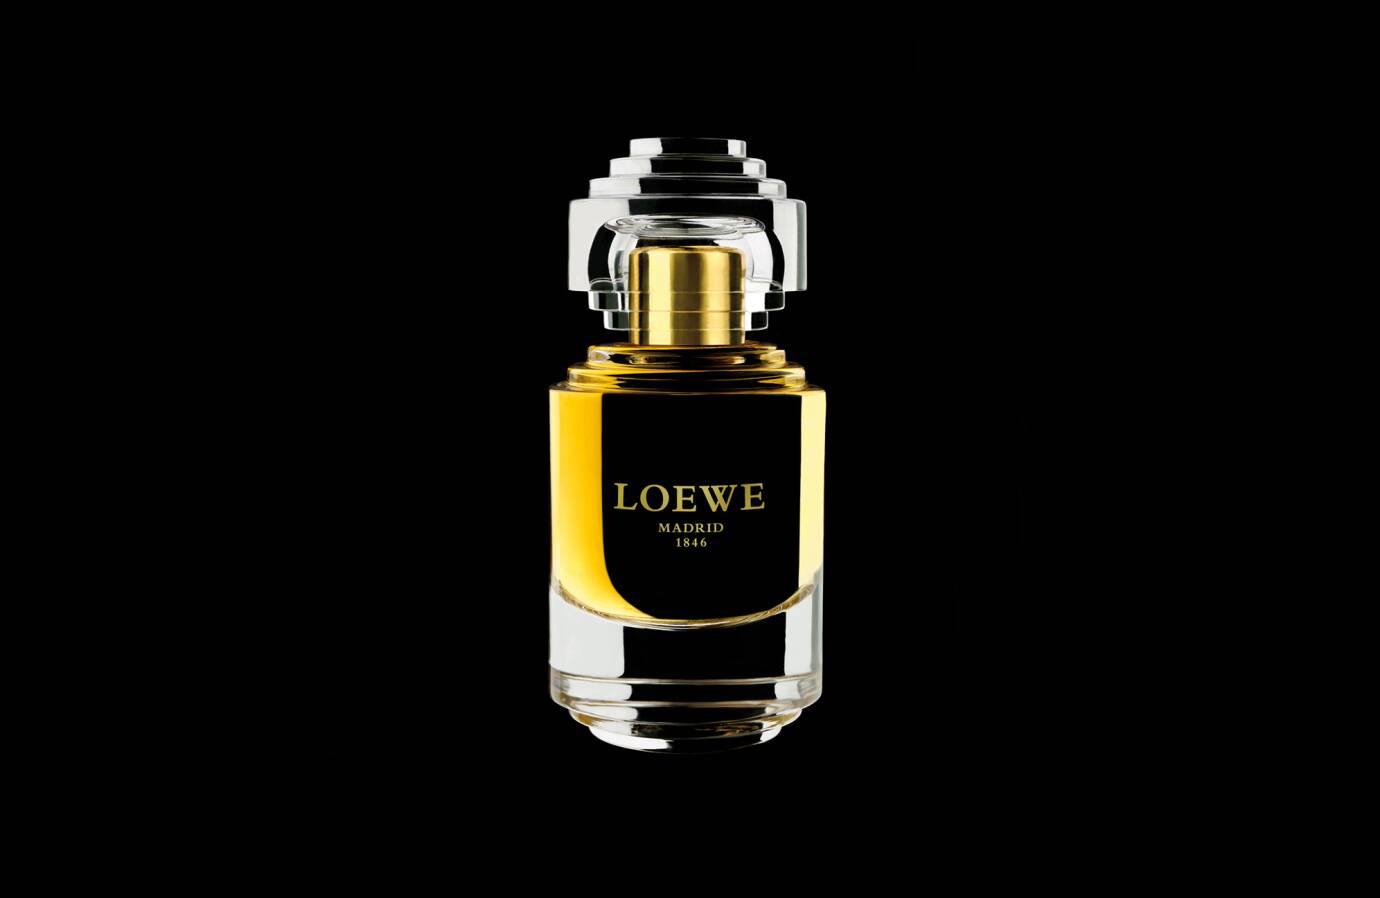 loewe madrid 1846 perfume